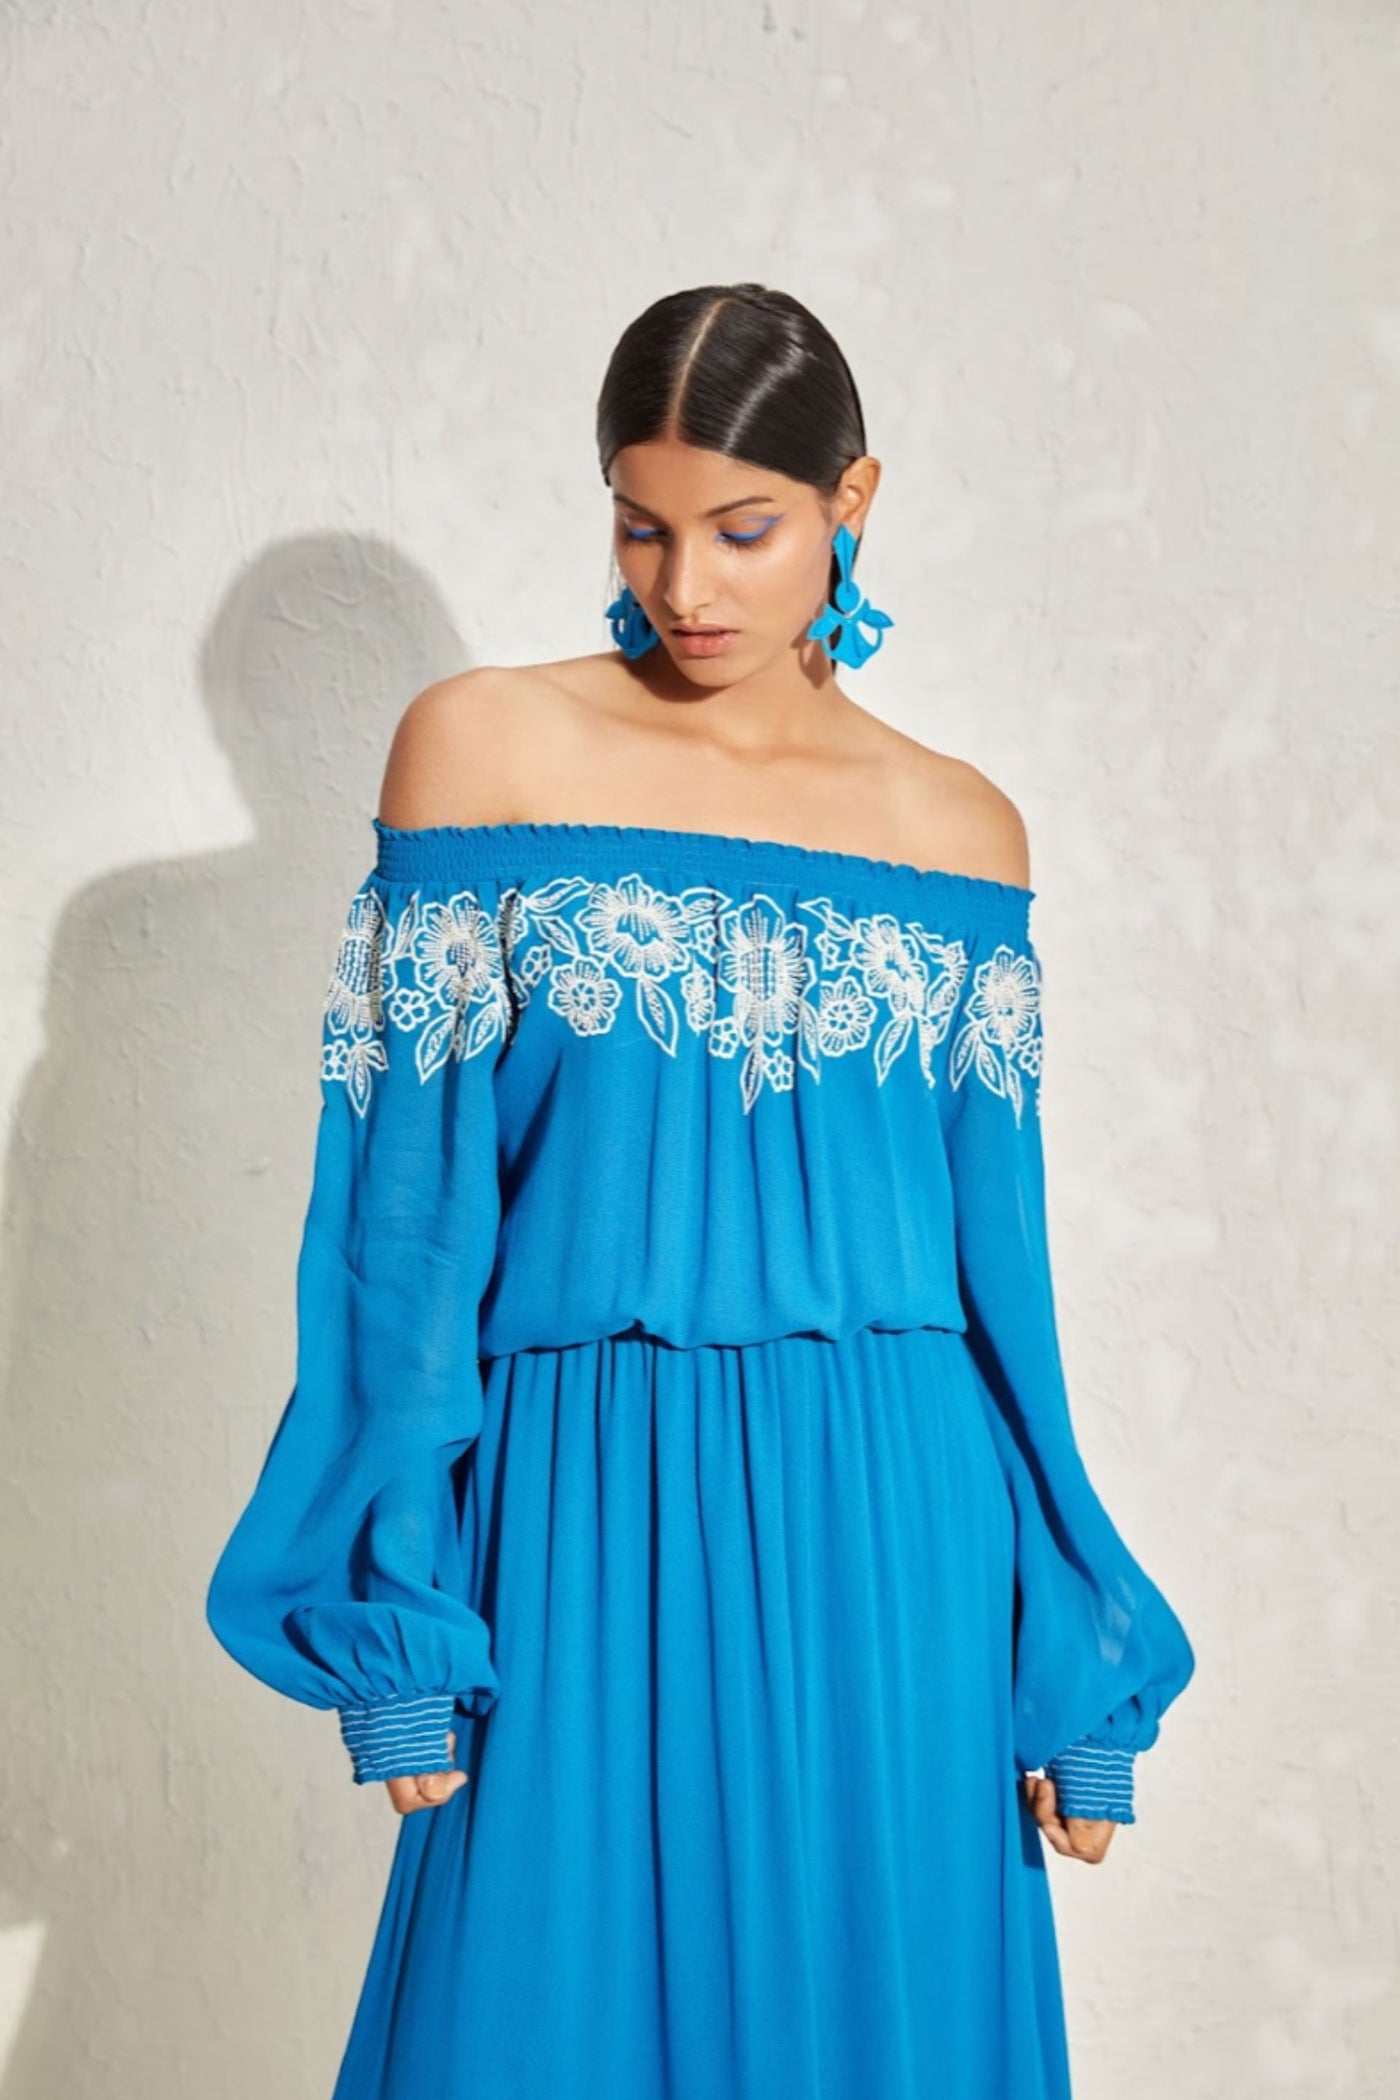 Namrata Joshipura Wisteria Gathered Waist Dress indian designer online shopping melange singapore